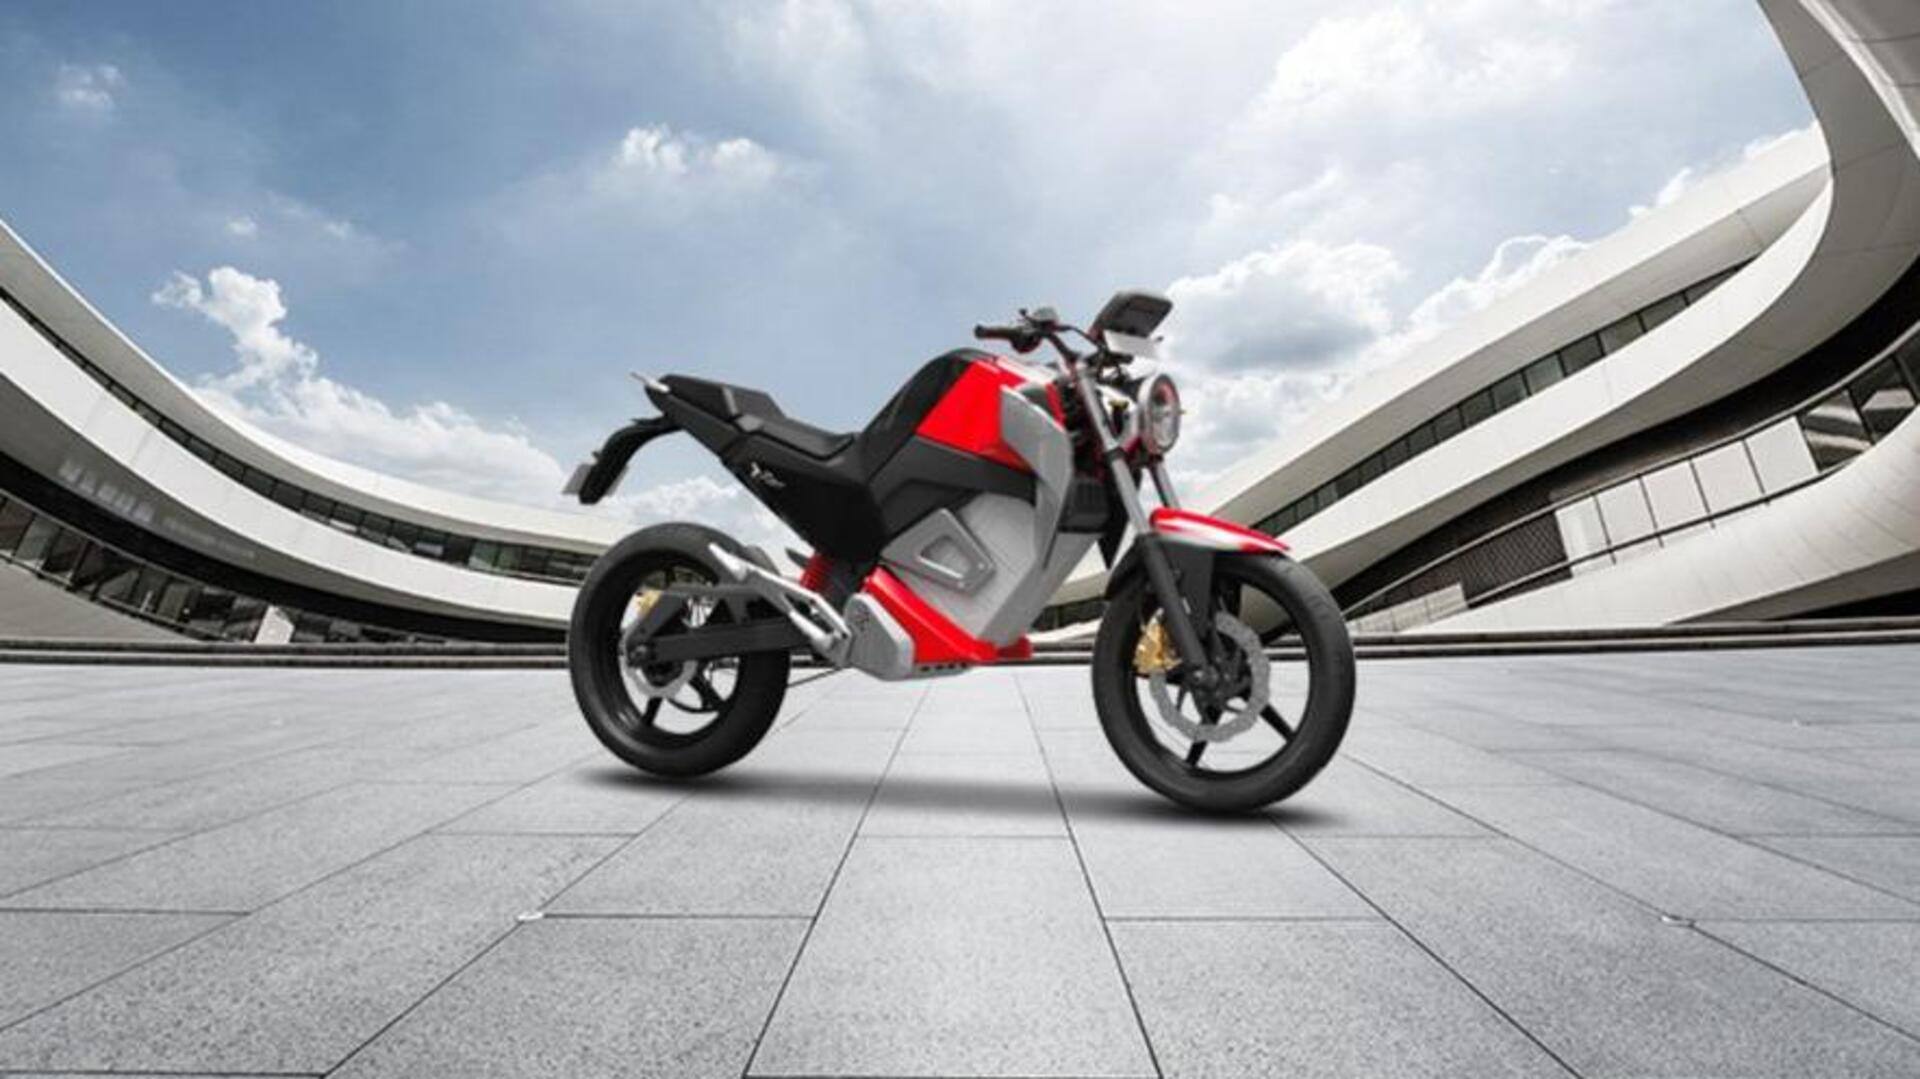 ओबेन रोर इलेक्ट्रिक बाइक की जुलाई में शुरू होगी डिलीवरी, कीमत 1.50 लाख रुपये 